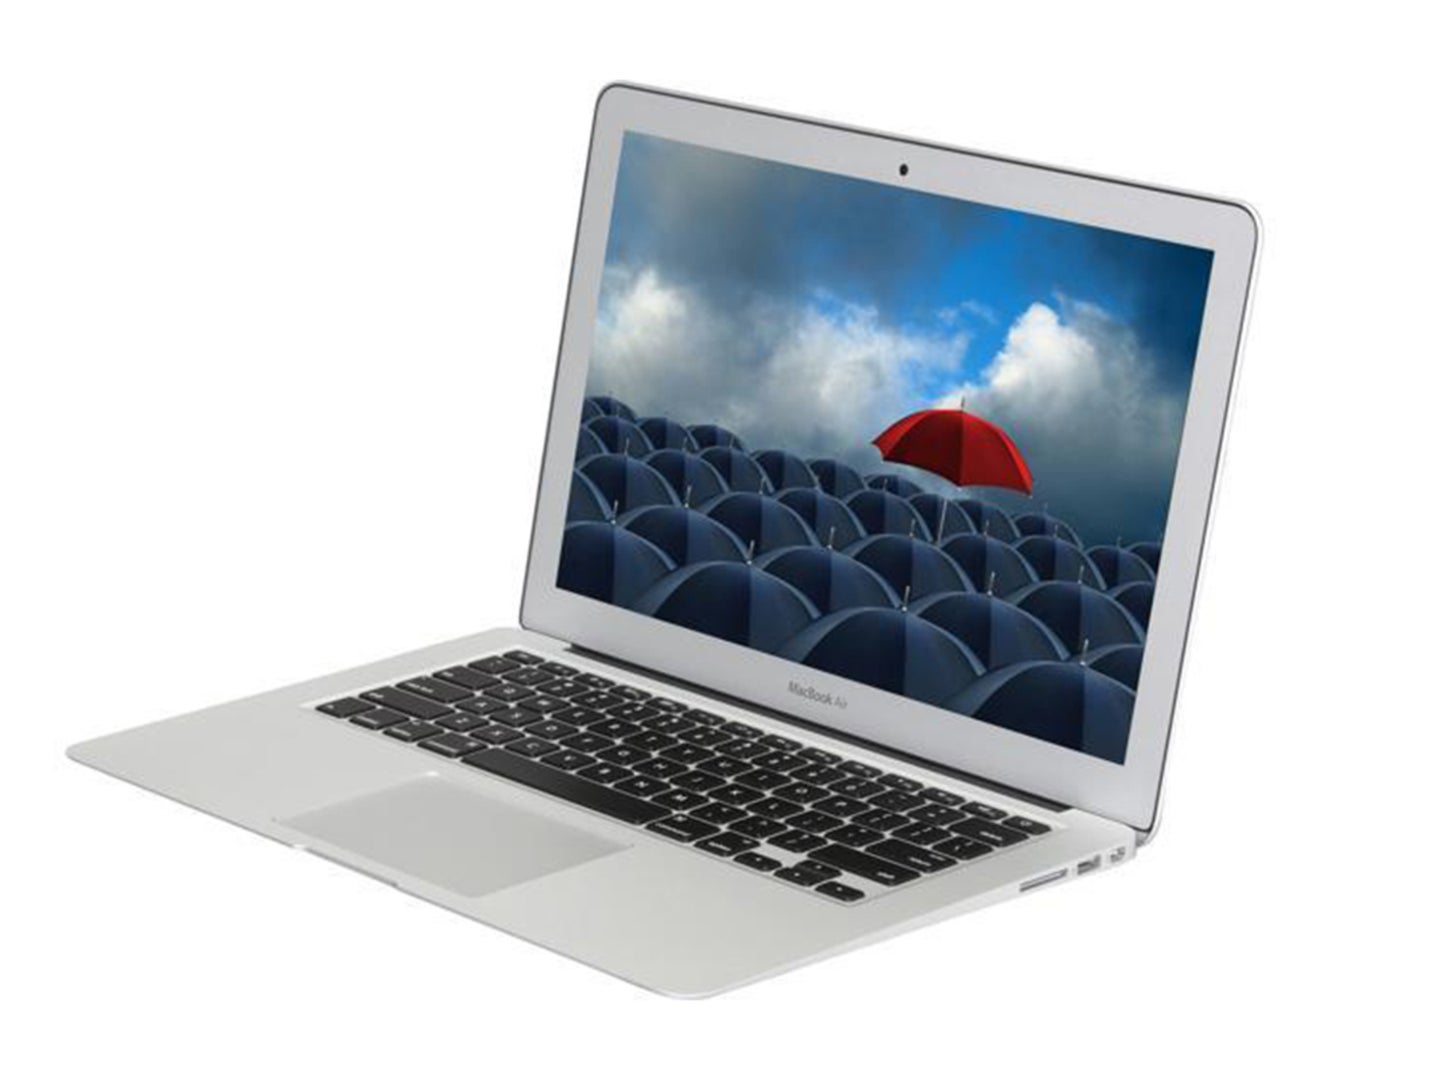 A 2014 Macbook Air against a white background